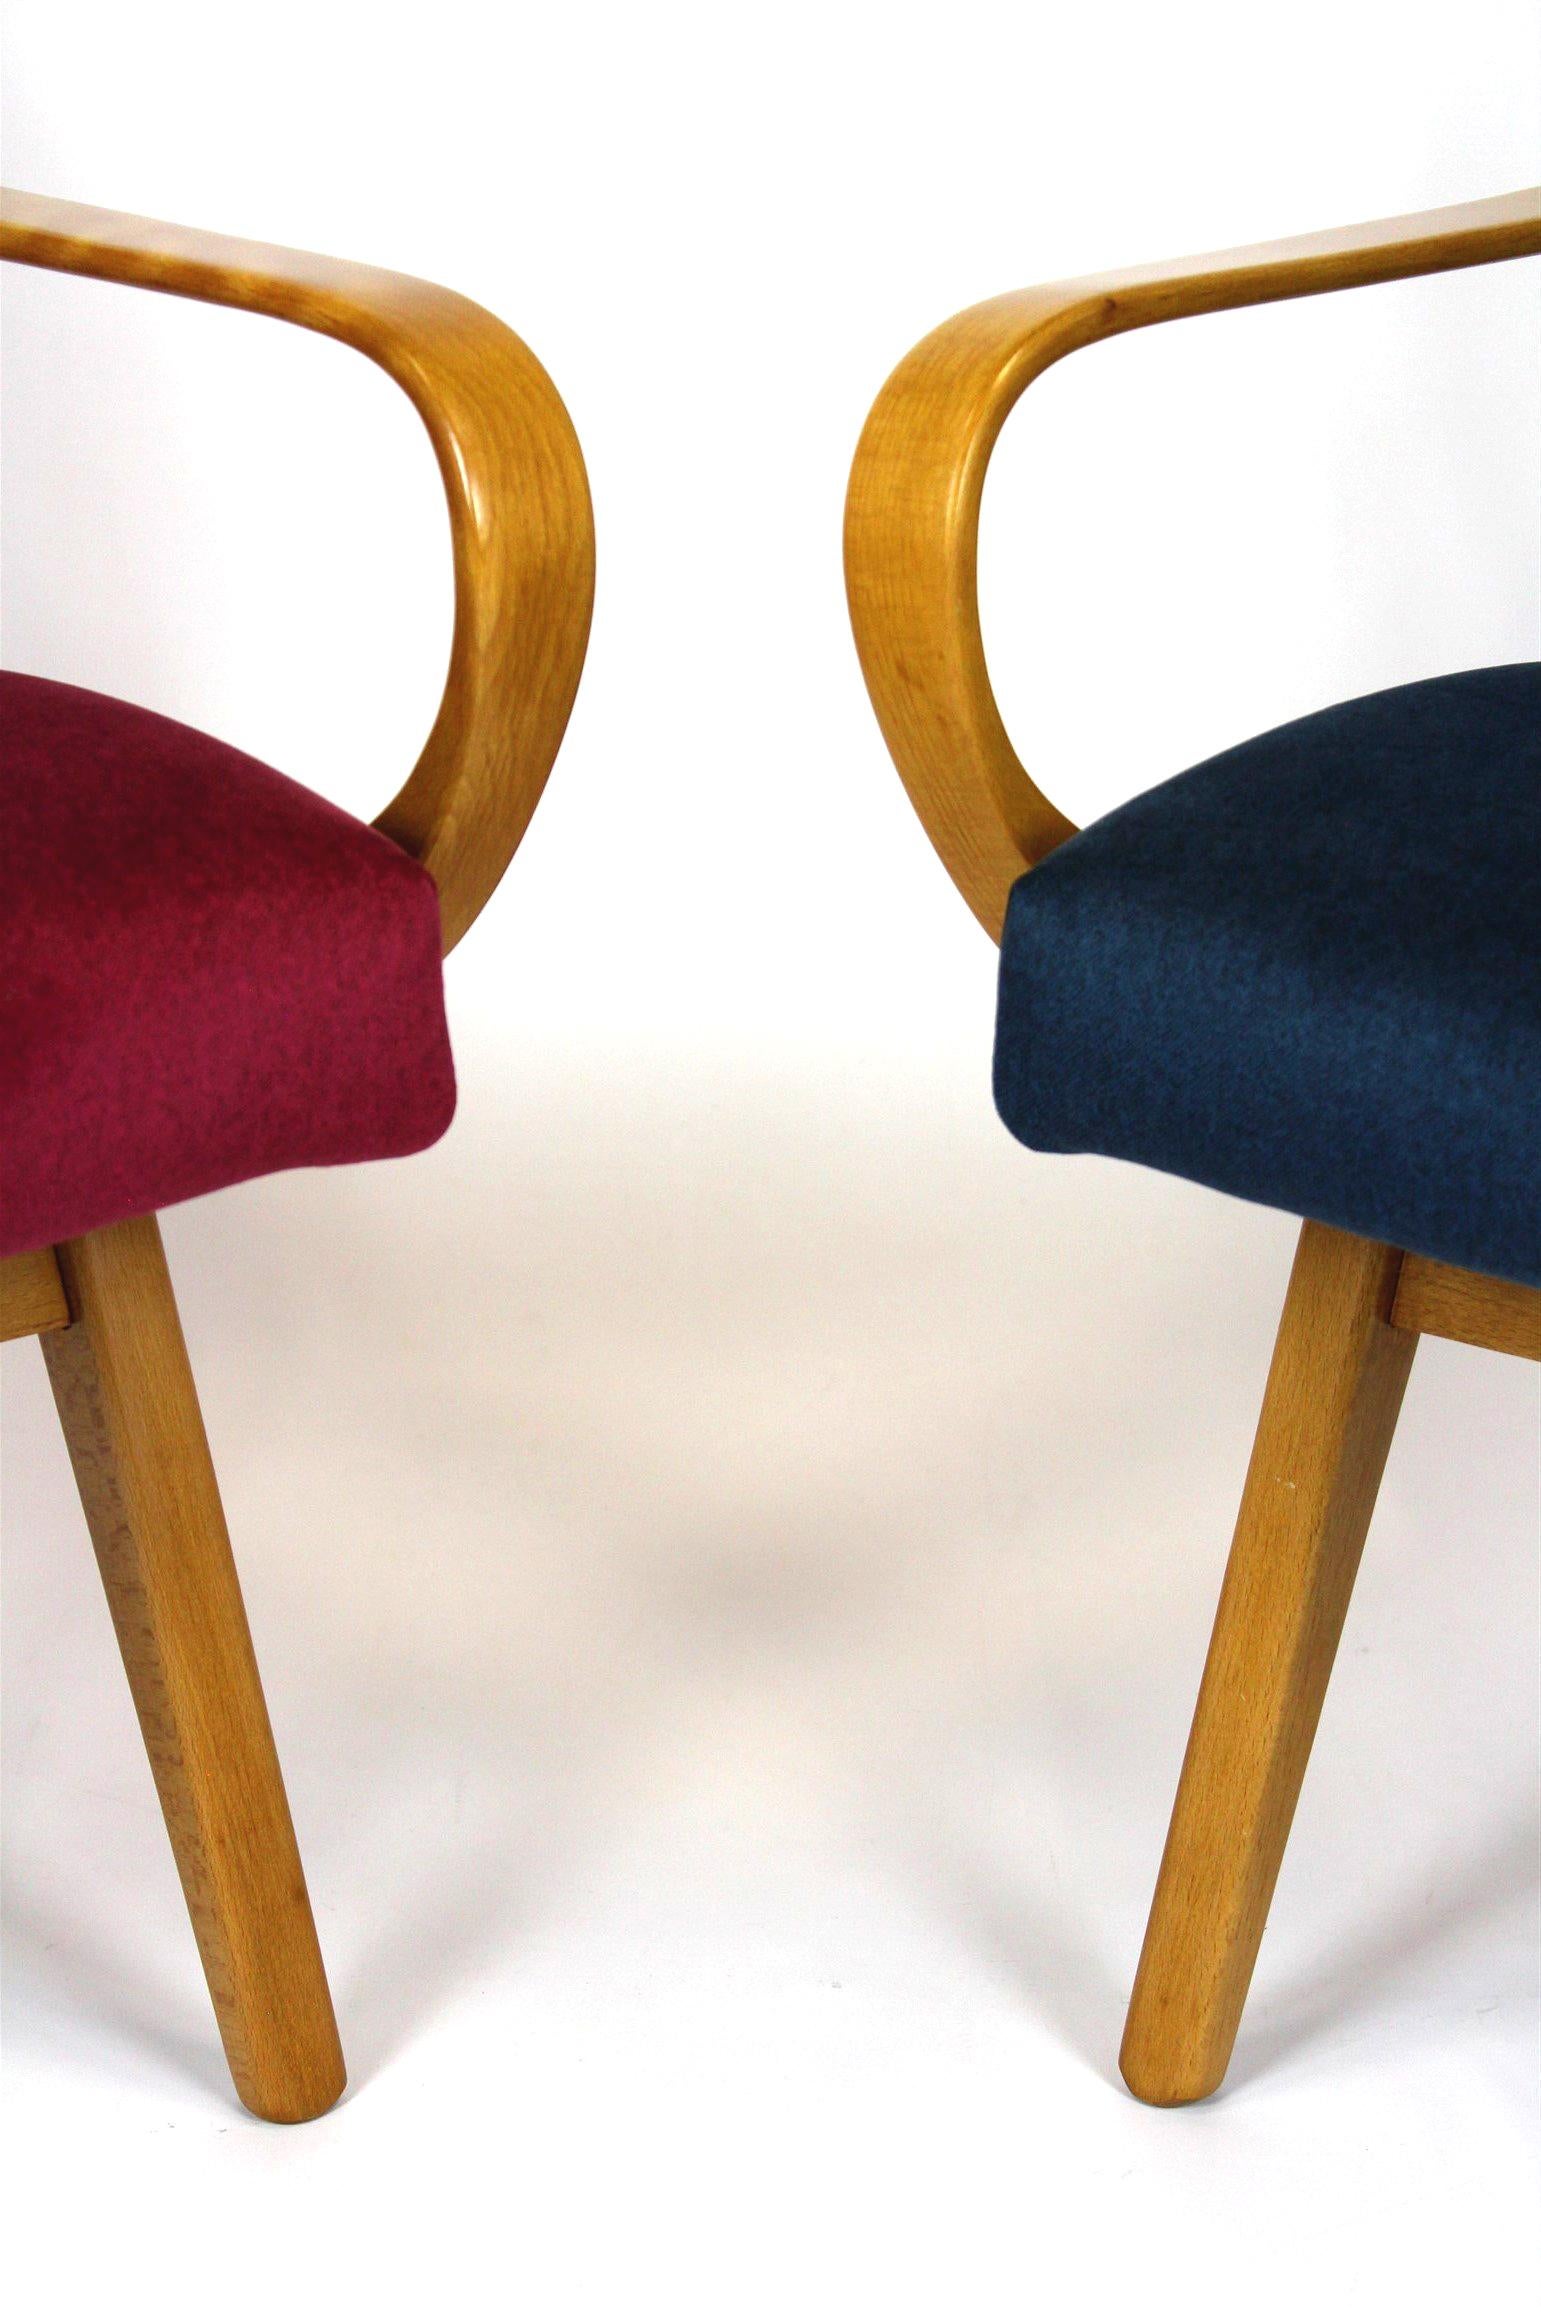 Paire de fauteuils en bois de hêtre conçus par Jaroslav Smidek et produits par TON au milieu des années 1960 en République tchèque. Ces fauteuils ont été entièrement restaurés. Le bois a été laqué en finition satinée. Les sièges ont été renouvelés,